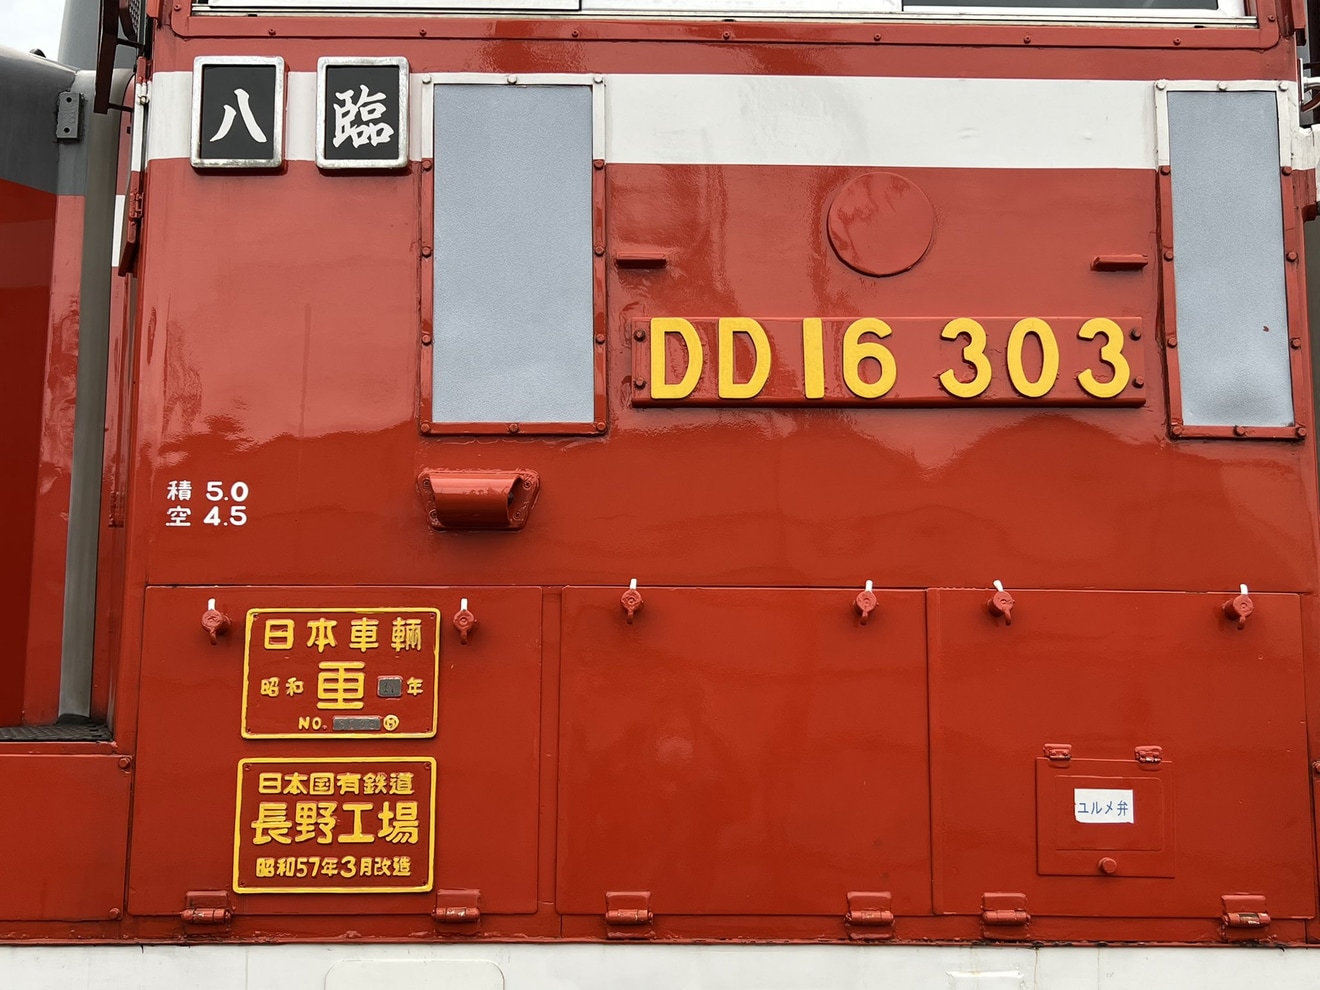 【八戸臨海】「第1回 ディーゼル機関車撮影会」開催の拡大写真